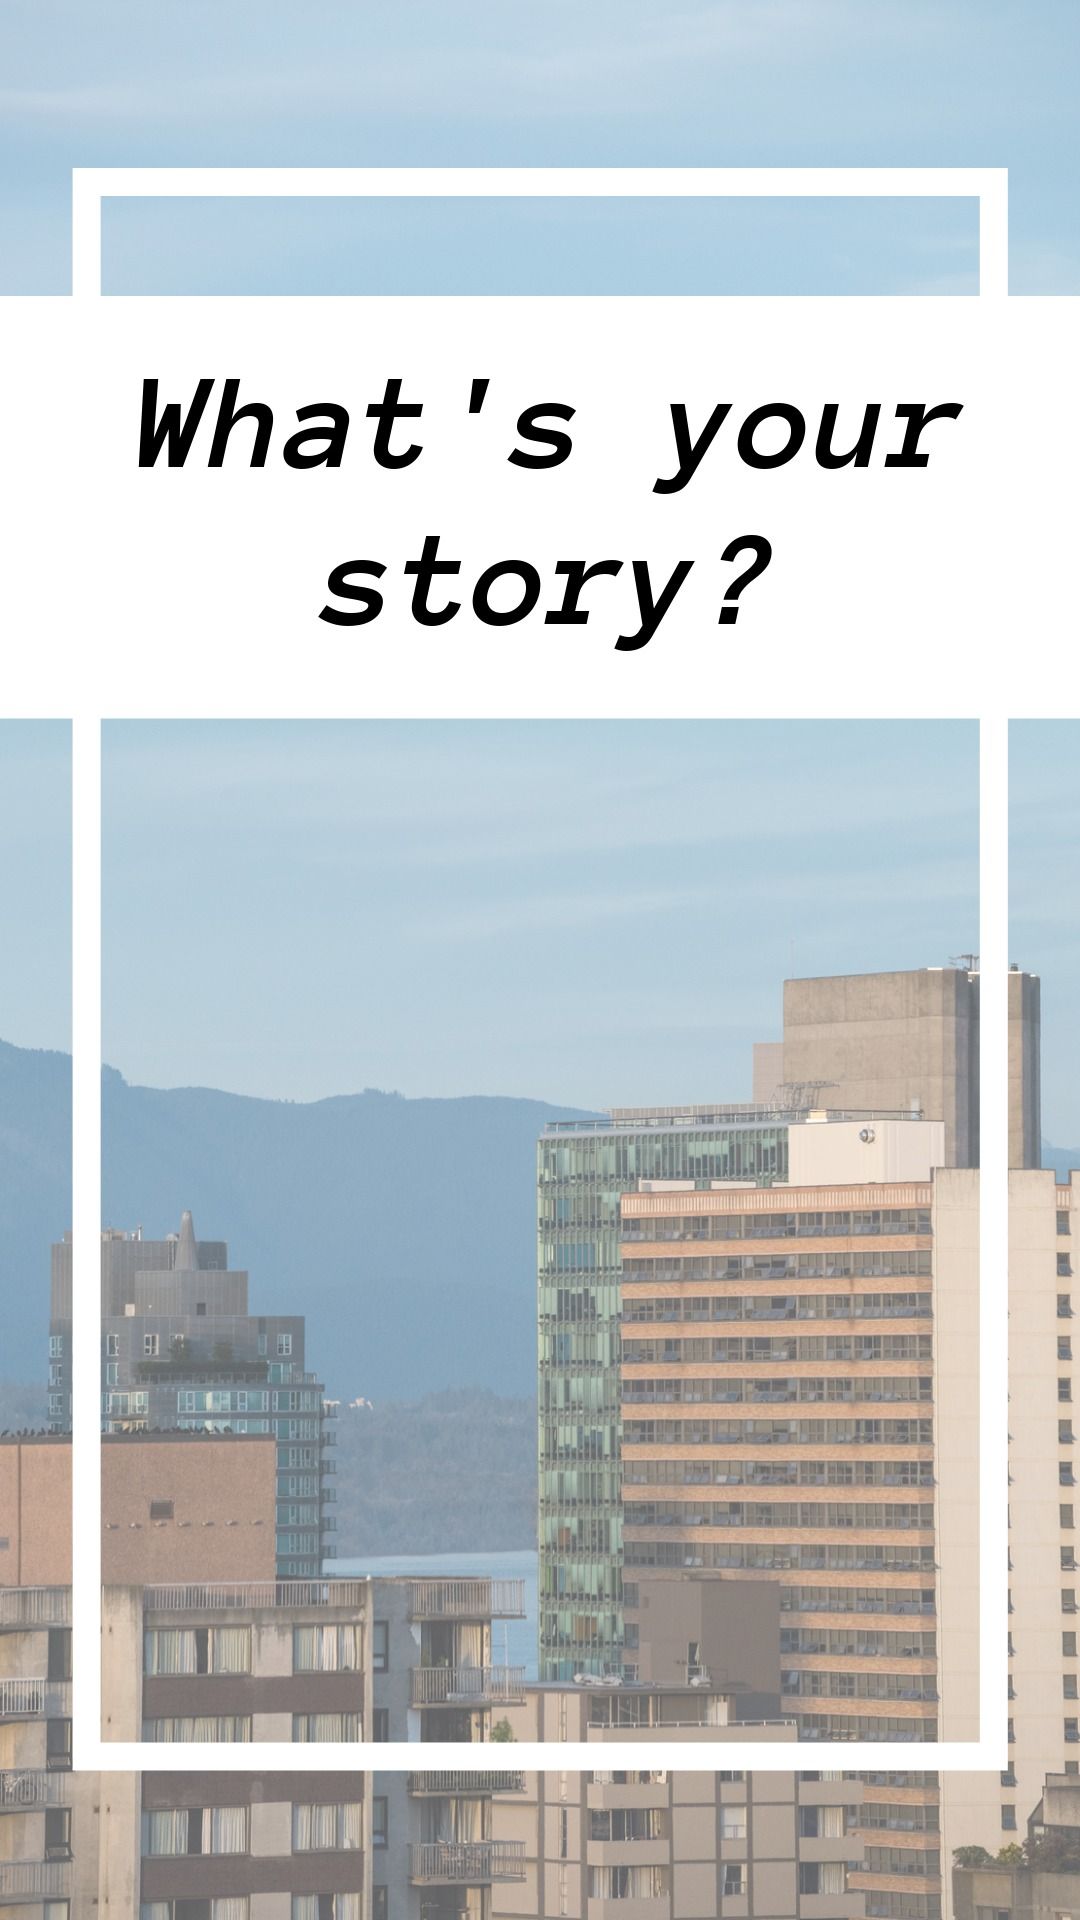 Image de story avec immeuble en fond - idées de story Instagram efficaces - image